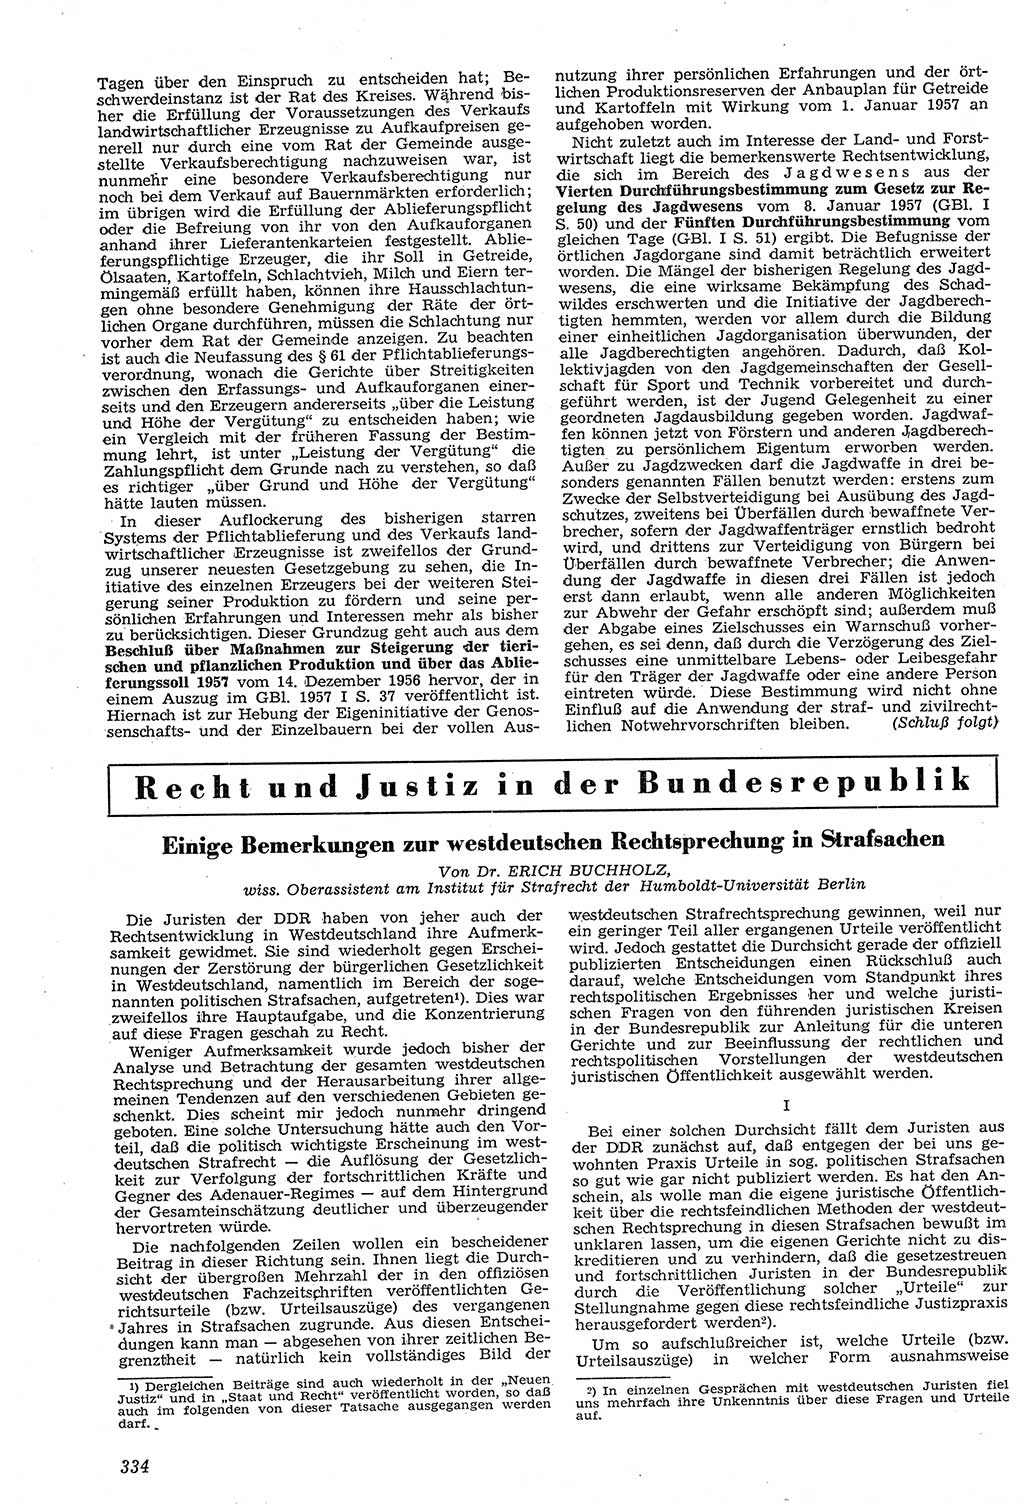 Neue Justiz (NJ), Zeitschrift für Recht und Rechtswissenschaft [Deutsche Demokratische Republik (DDR)], 11. Jahrgang 1957, Seite 334 (NJ DDR 1957, S. 334)